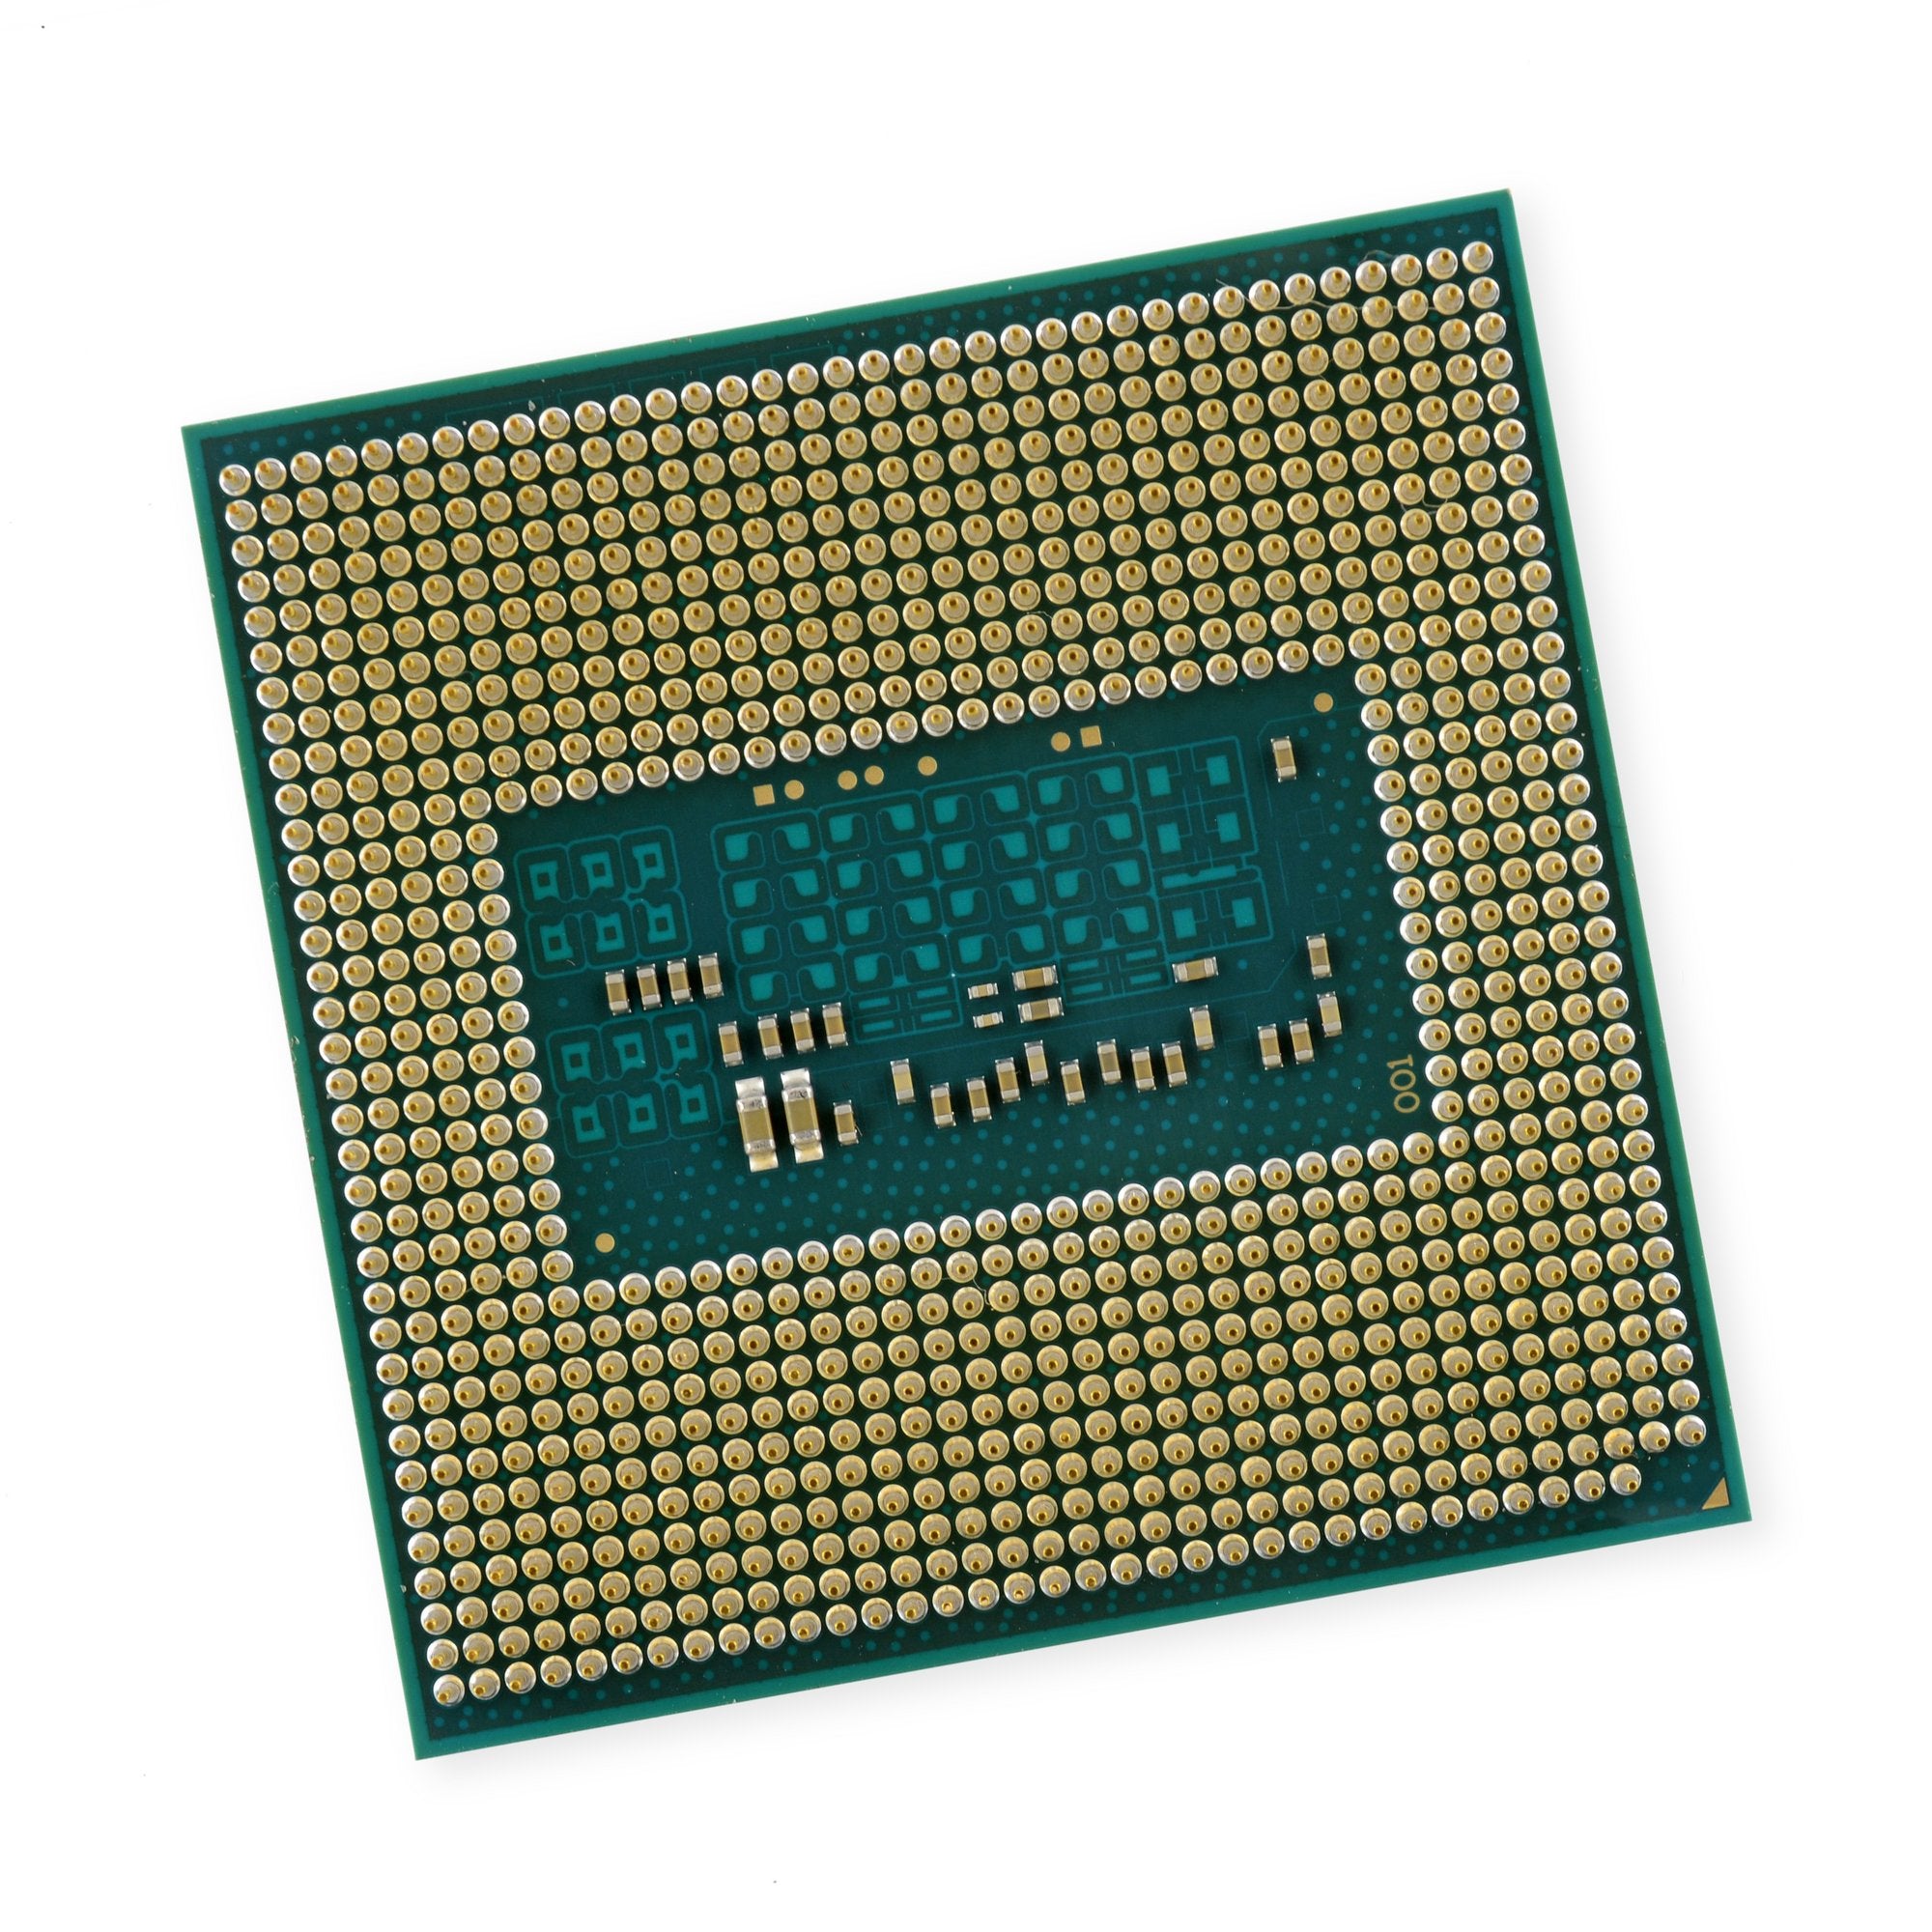 HP ENVY TouchSmart M7-J020DX 2.4 GHz i7-4700MQ CPU